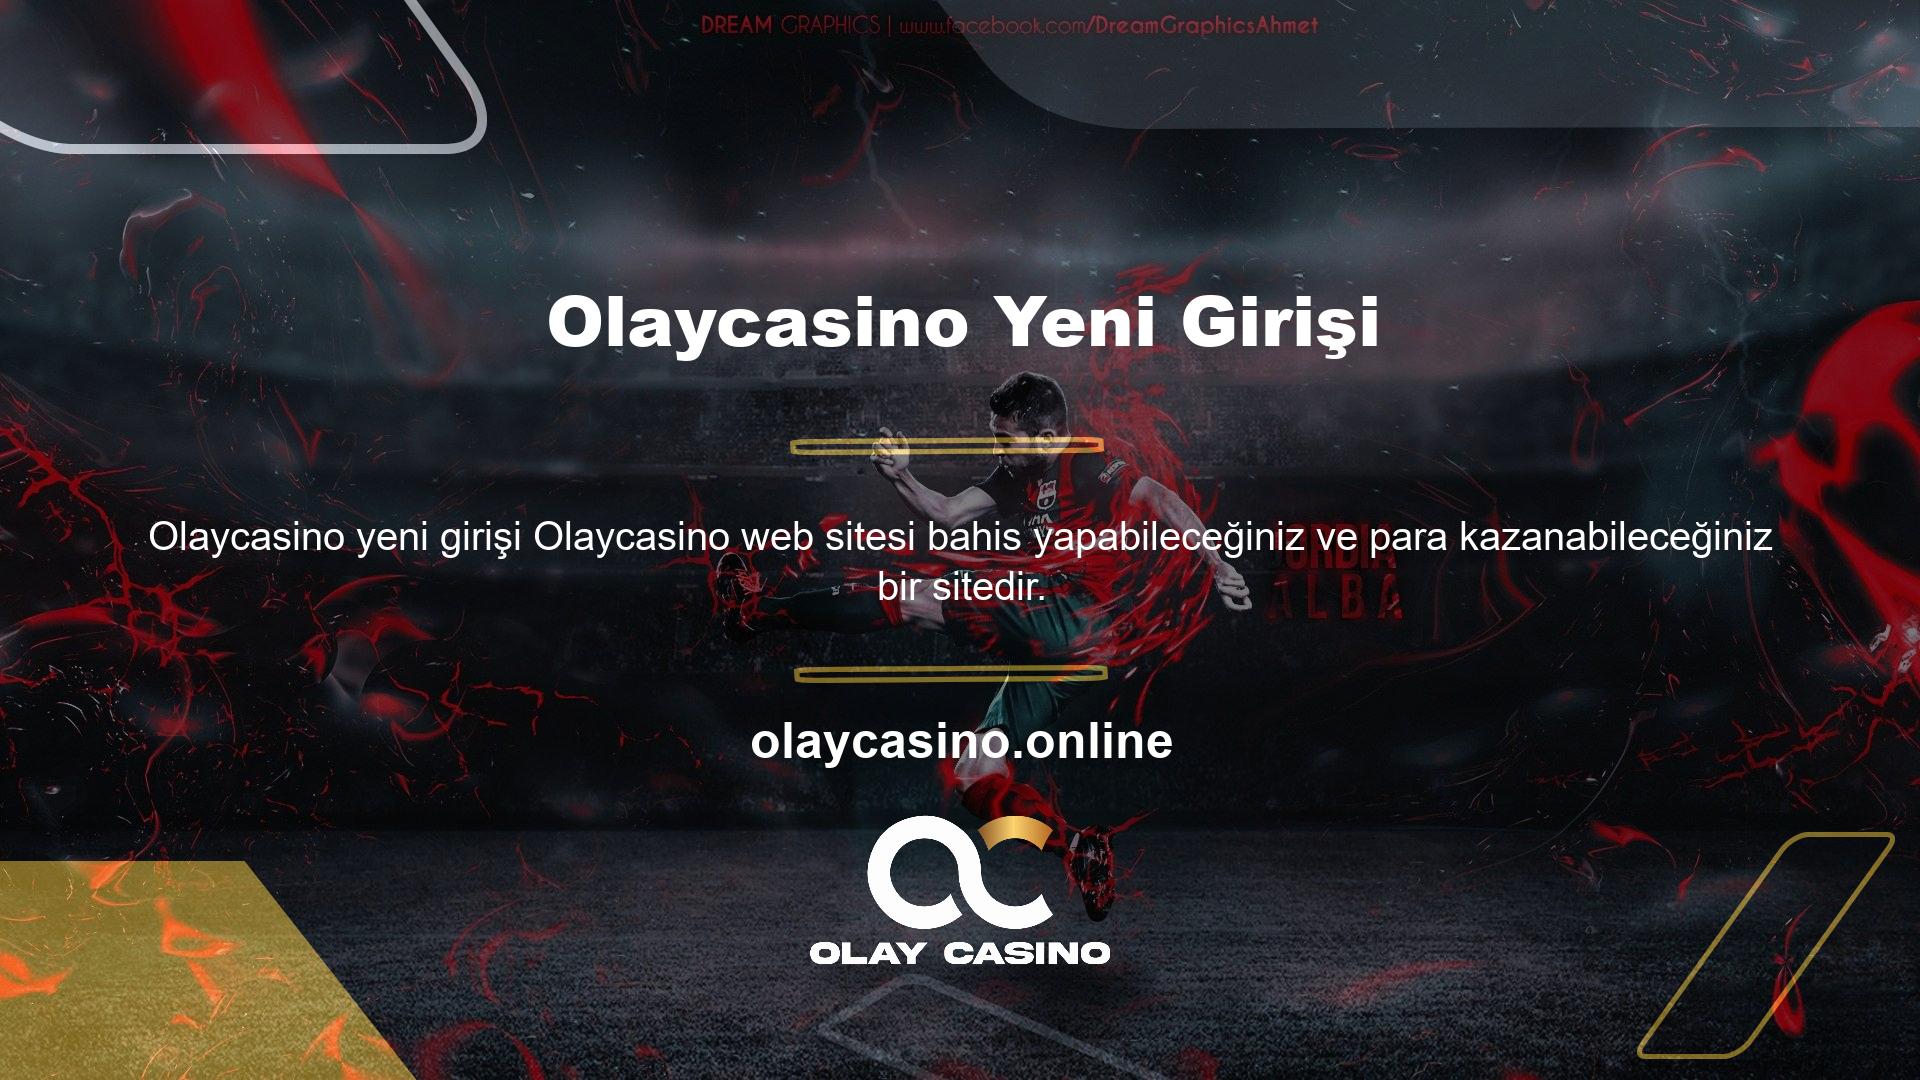 Aynı zamanda Olaycasino oyun oynayıp para kazanabileceğiniz bir sitedir